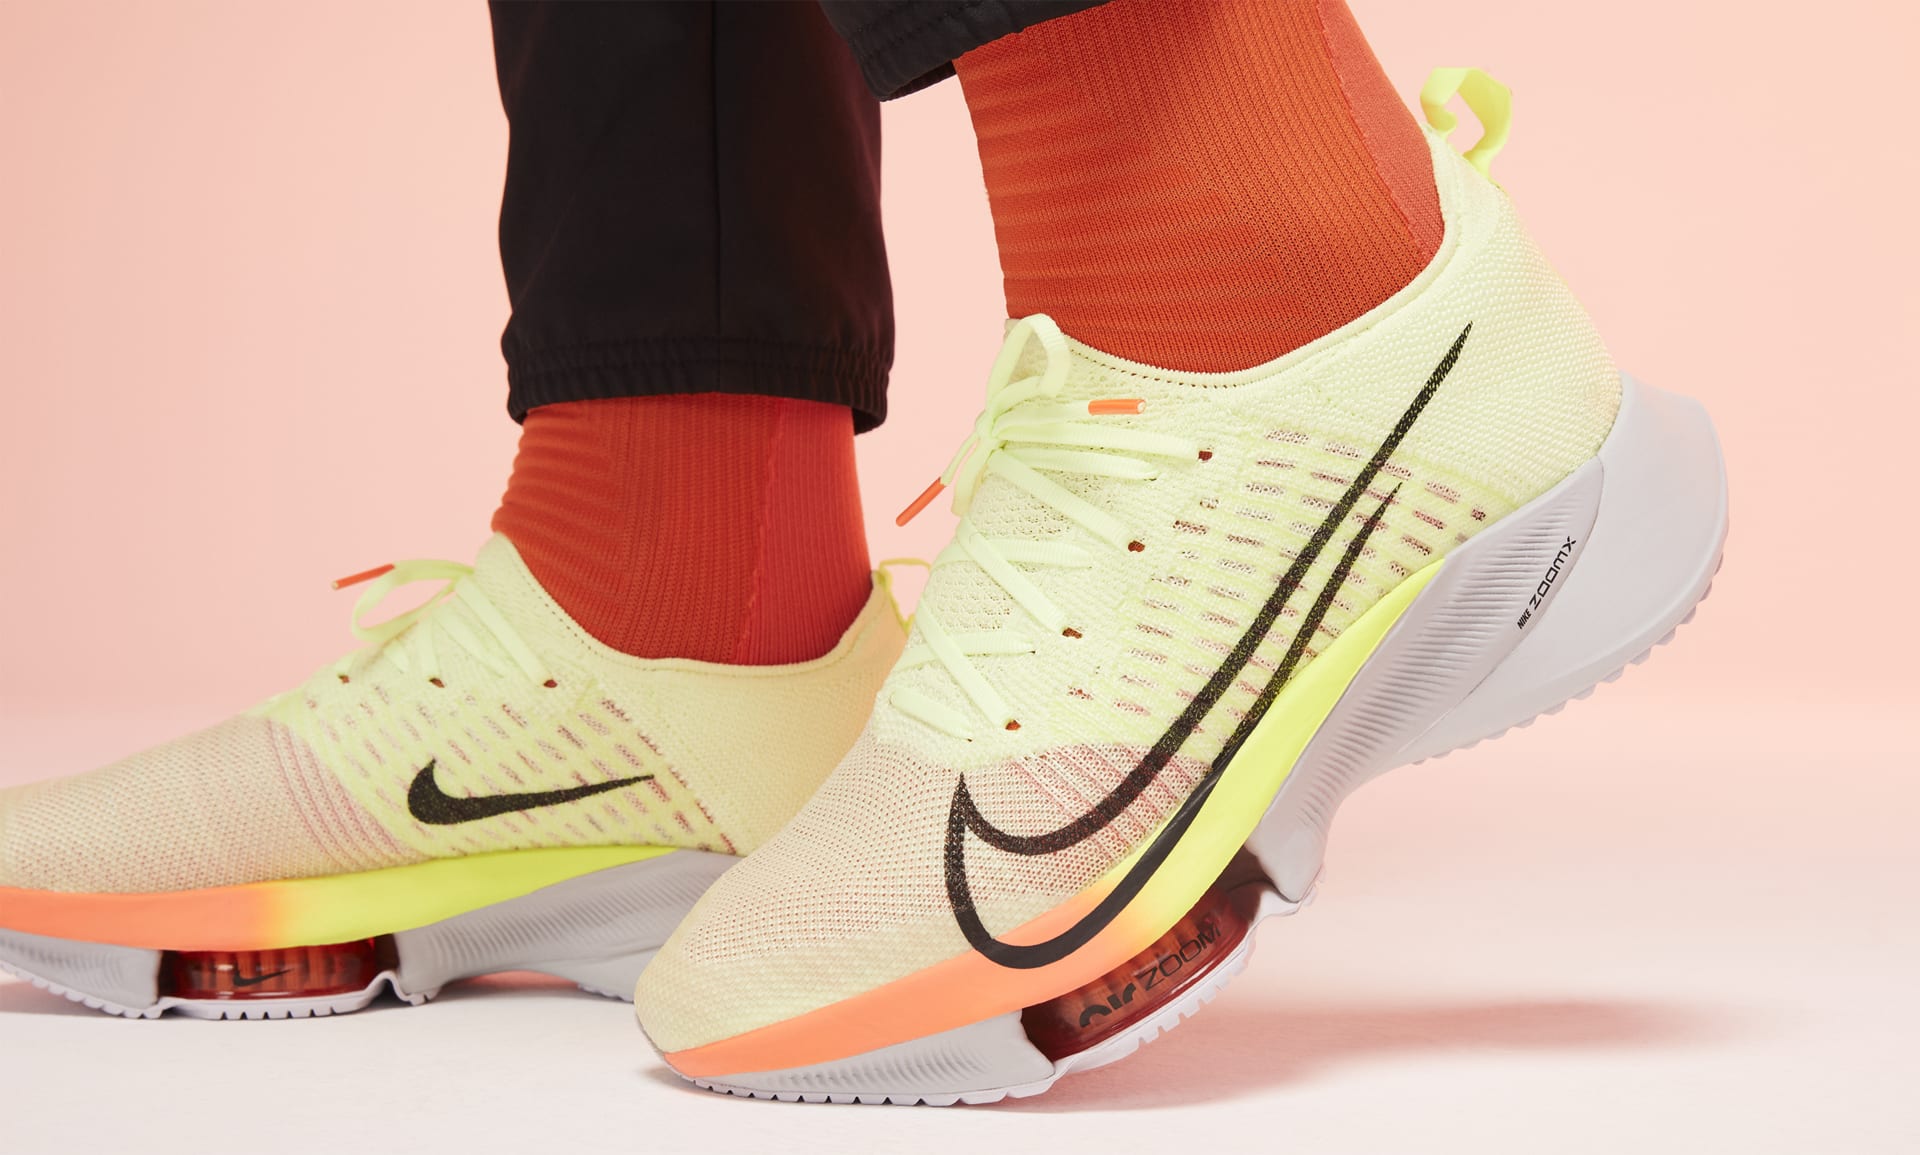 Buty do biegania od Nike z widoczną jednostką Zoom.